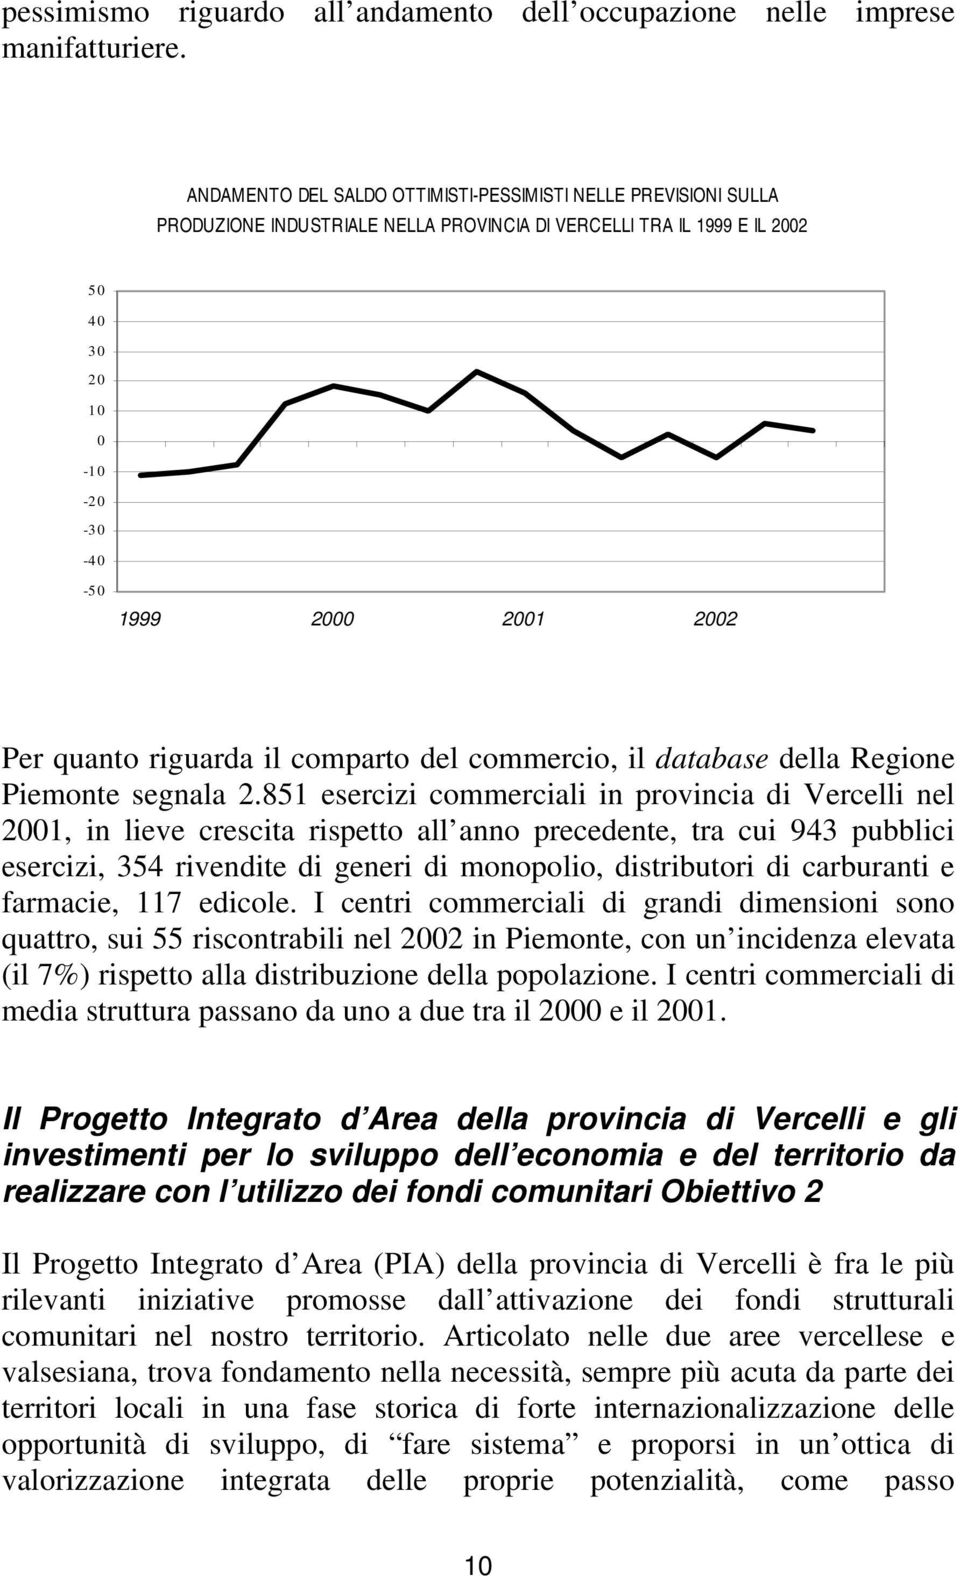 quanto riguarda il comparto del commercio, il database della Regione Piemonte segnala 2.